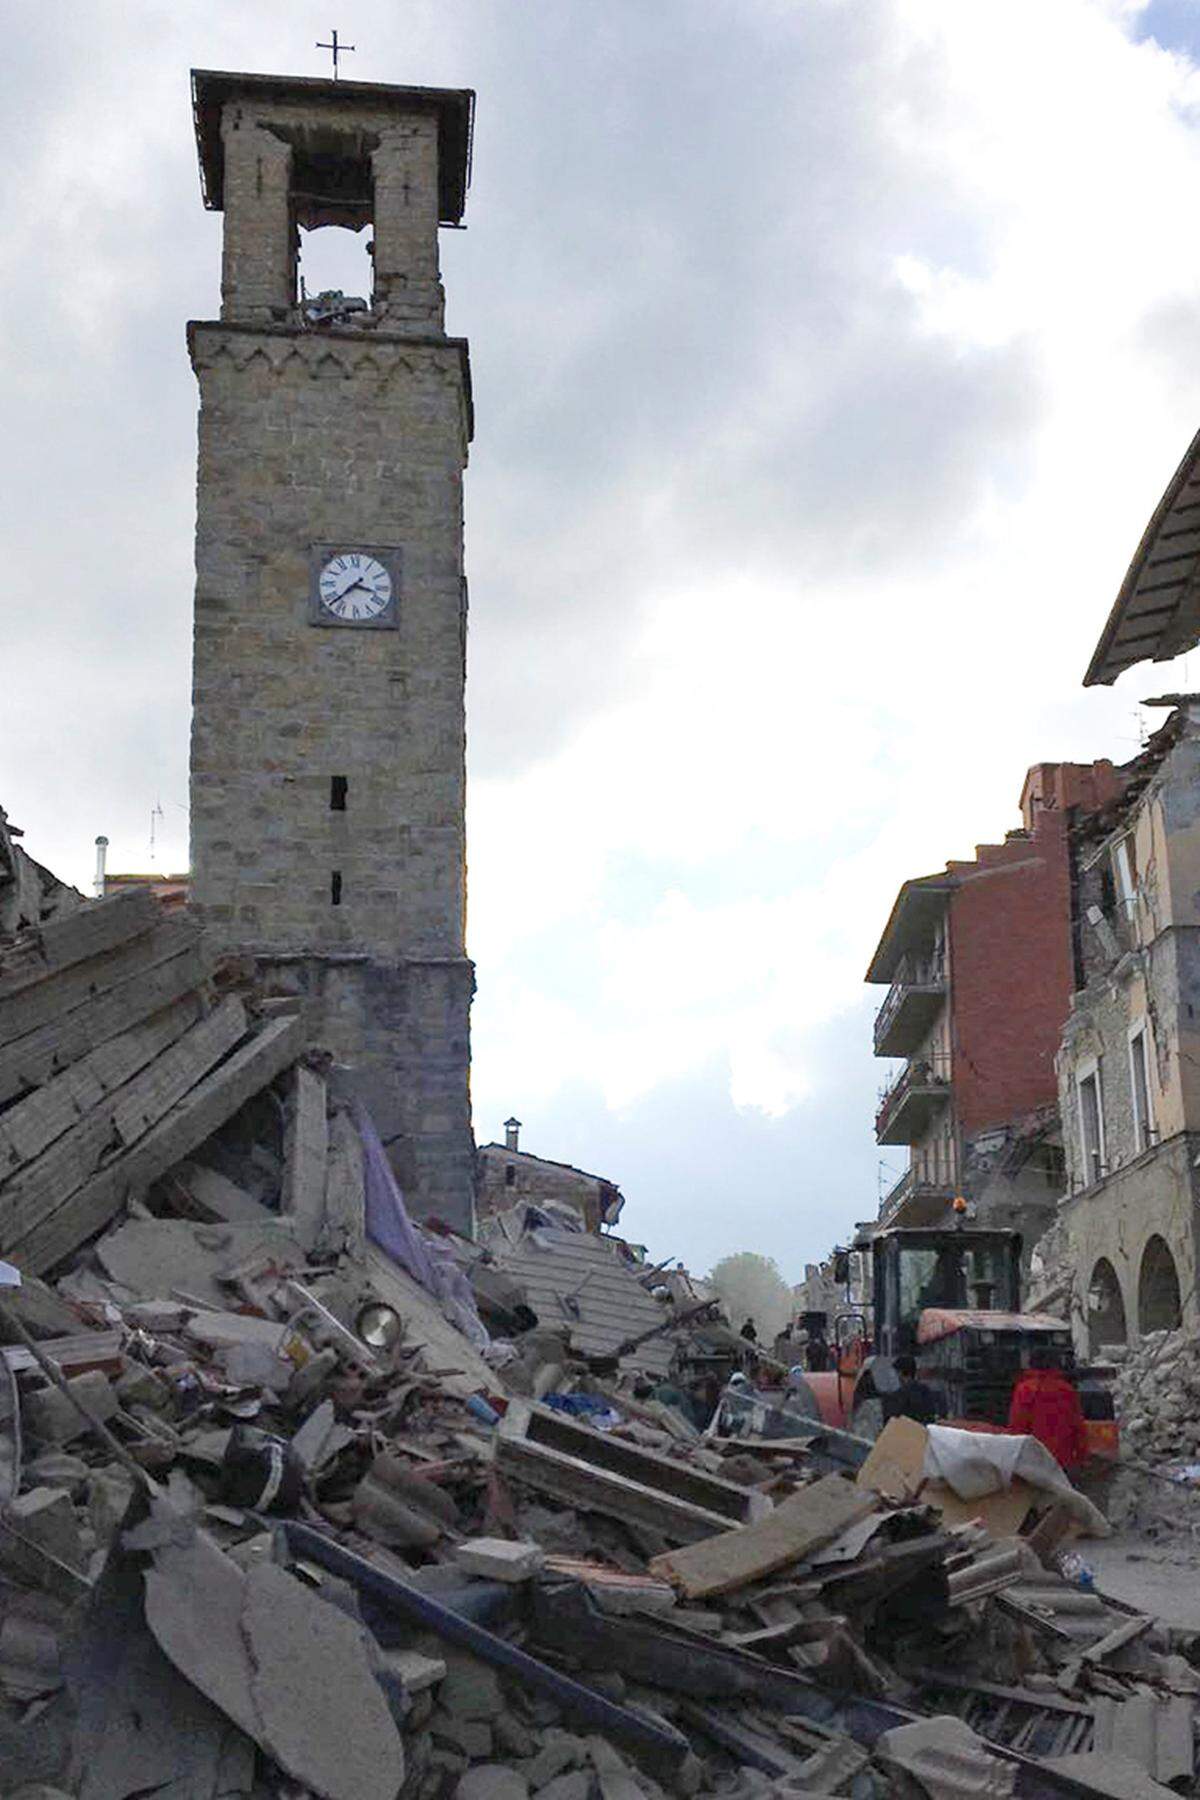 Um 3.38 Uhr blieb die Turmuhr in Amatrice stehen. Viele Häuser im Ortskern fielen in sich zusammen. Der Rathausturm stammt aus dem 13. Jahrhundert. Die Glockentürme der Kirchen Sant' Emidio und Sant' Agostino stammen aus dem 14. Jahrhundert.